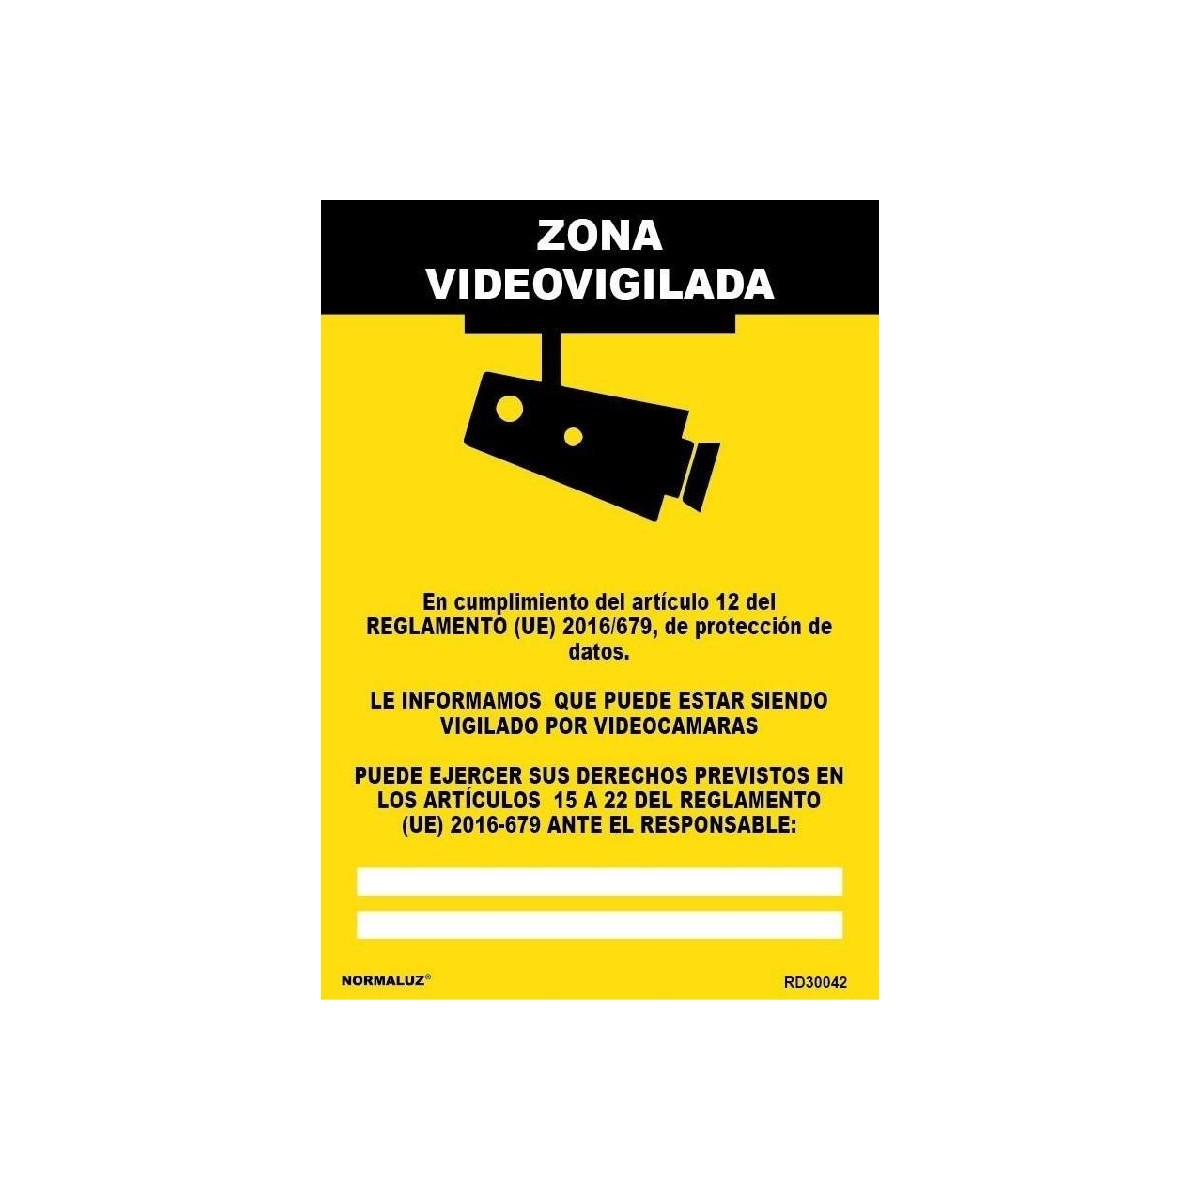 Señal Zona videovigilada Normaluz, Señal Peligro Normaluz